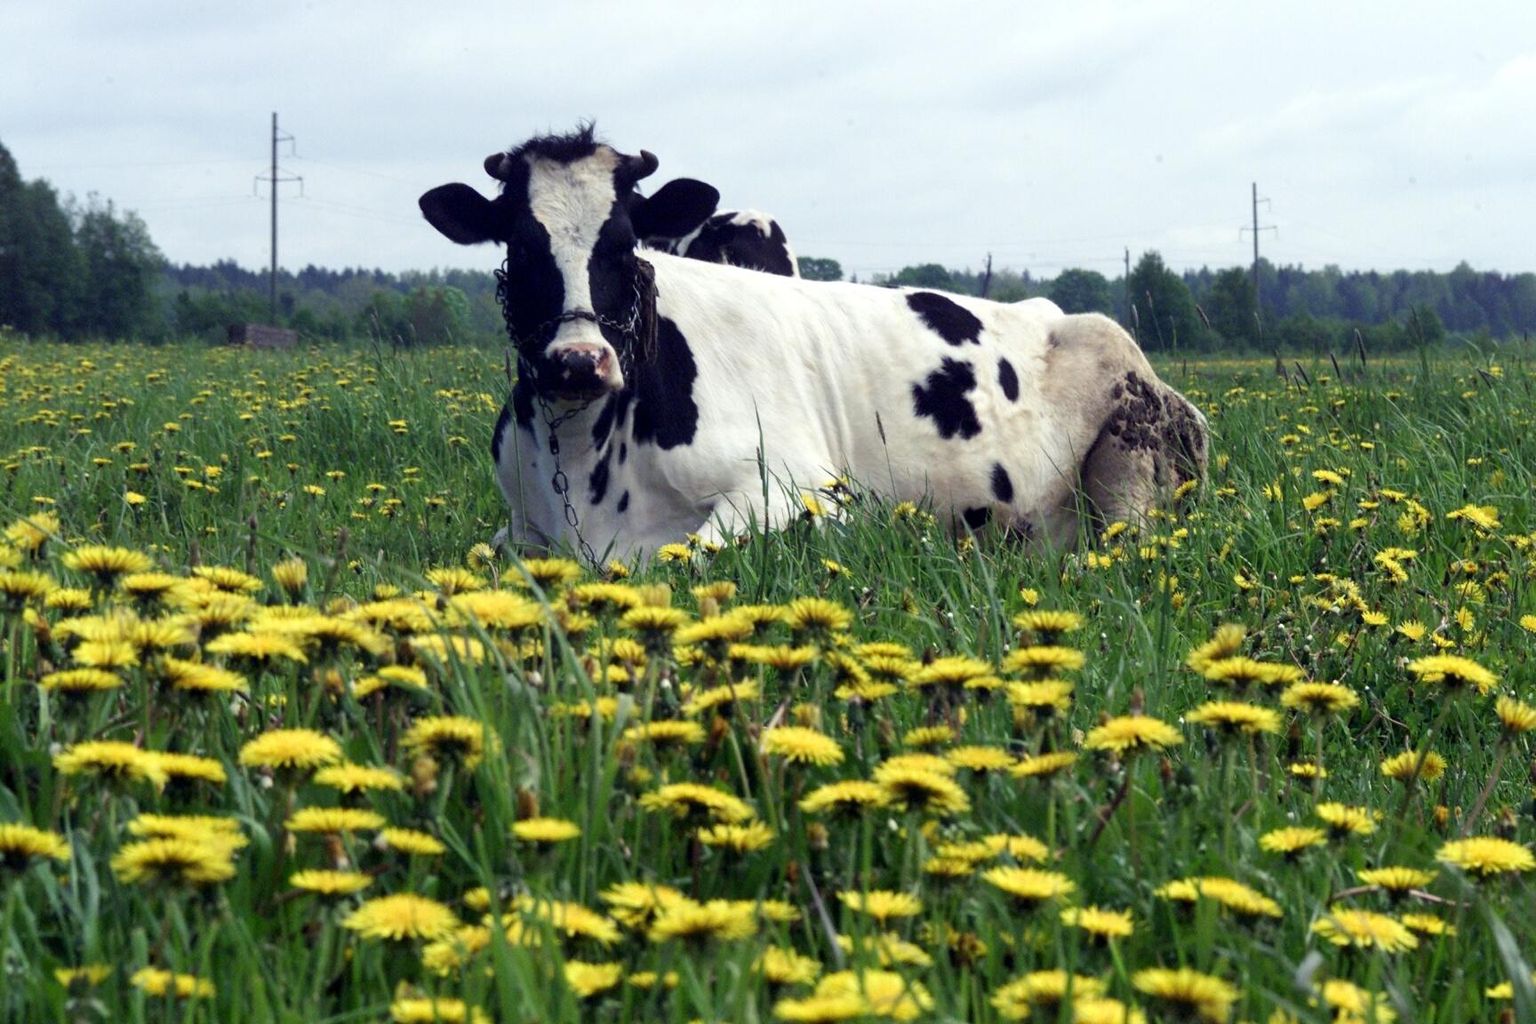 Erinevalt suurfarmi loomadest pääsevad mahetalus lehmad suveks karjamaale.